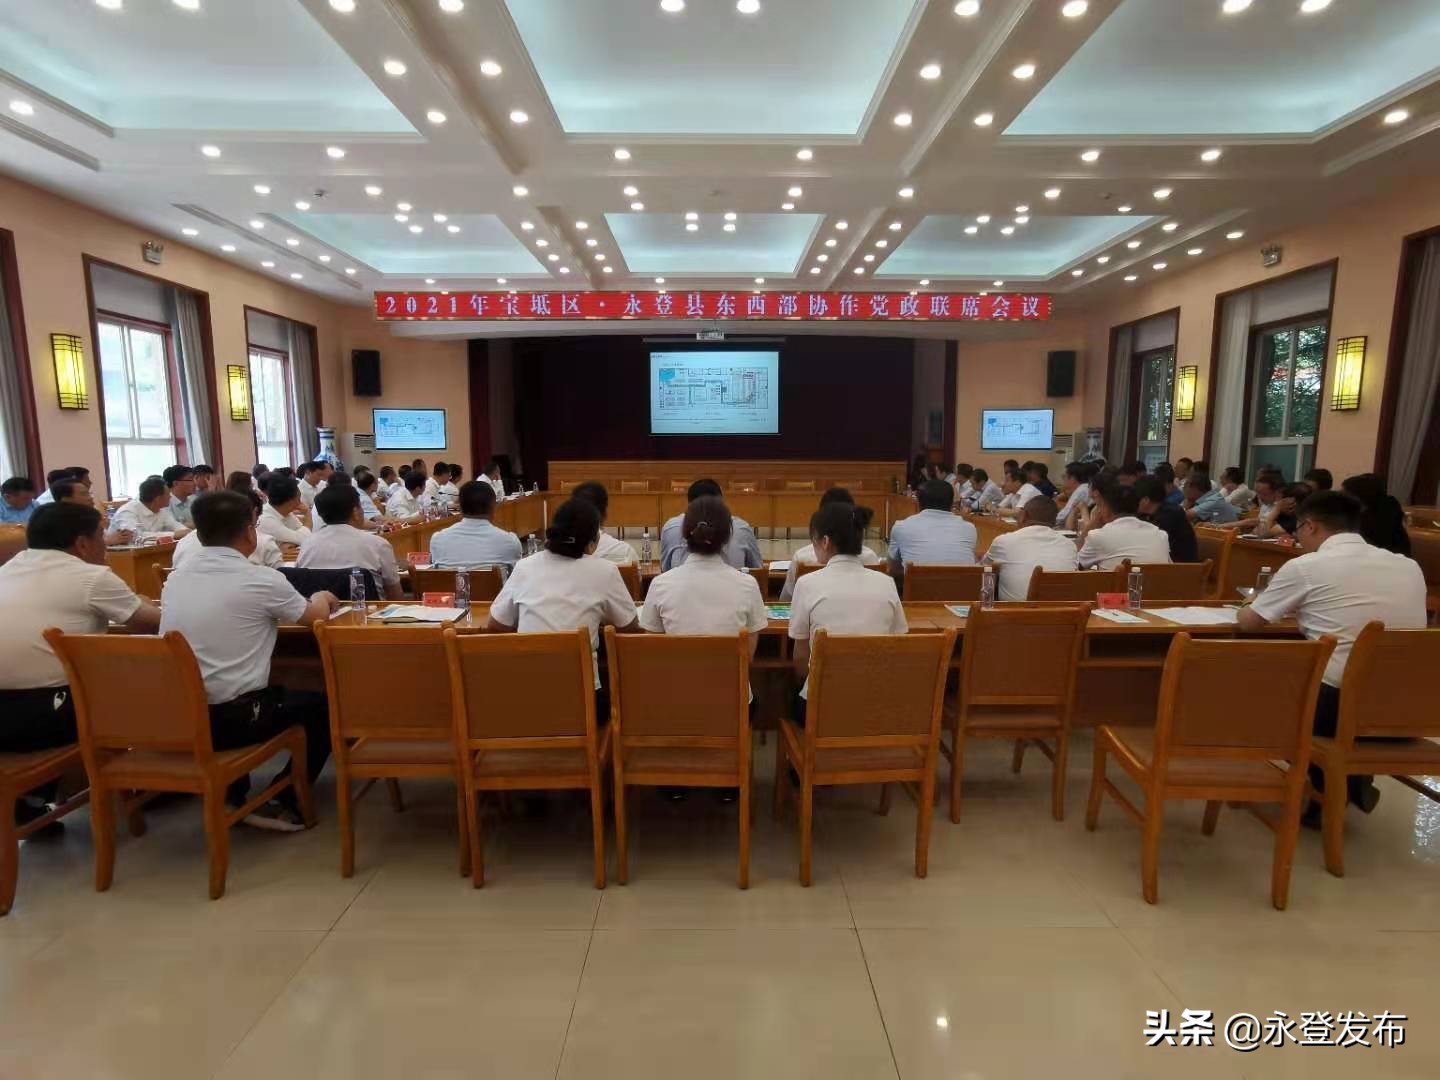 2021年宝坻区永登县东西部协作党政联席会议召开